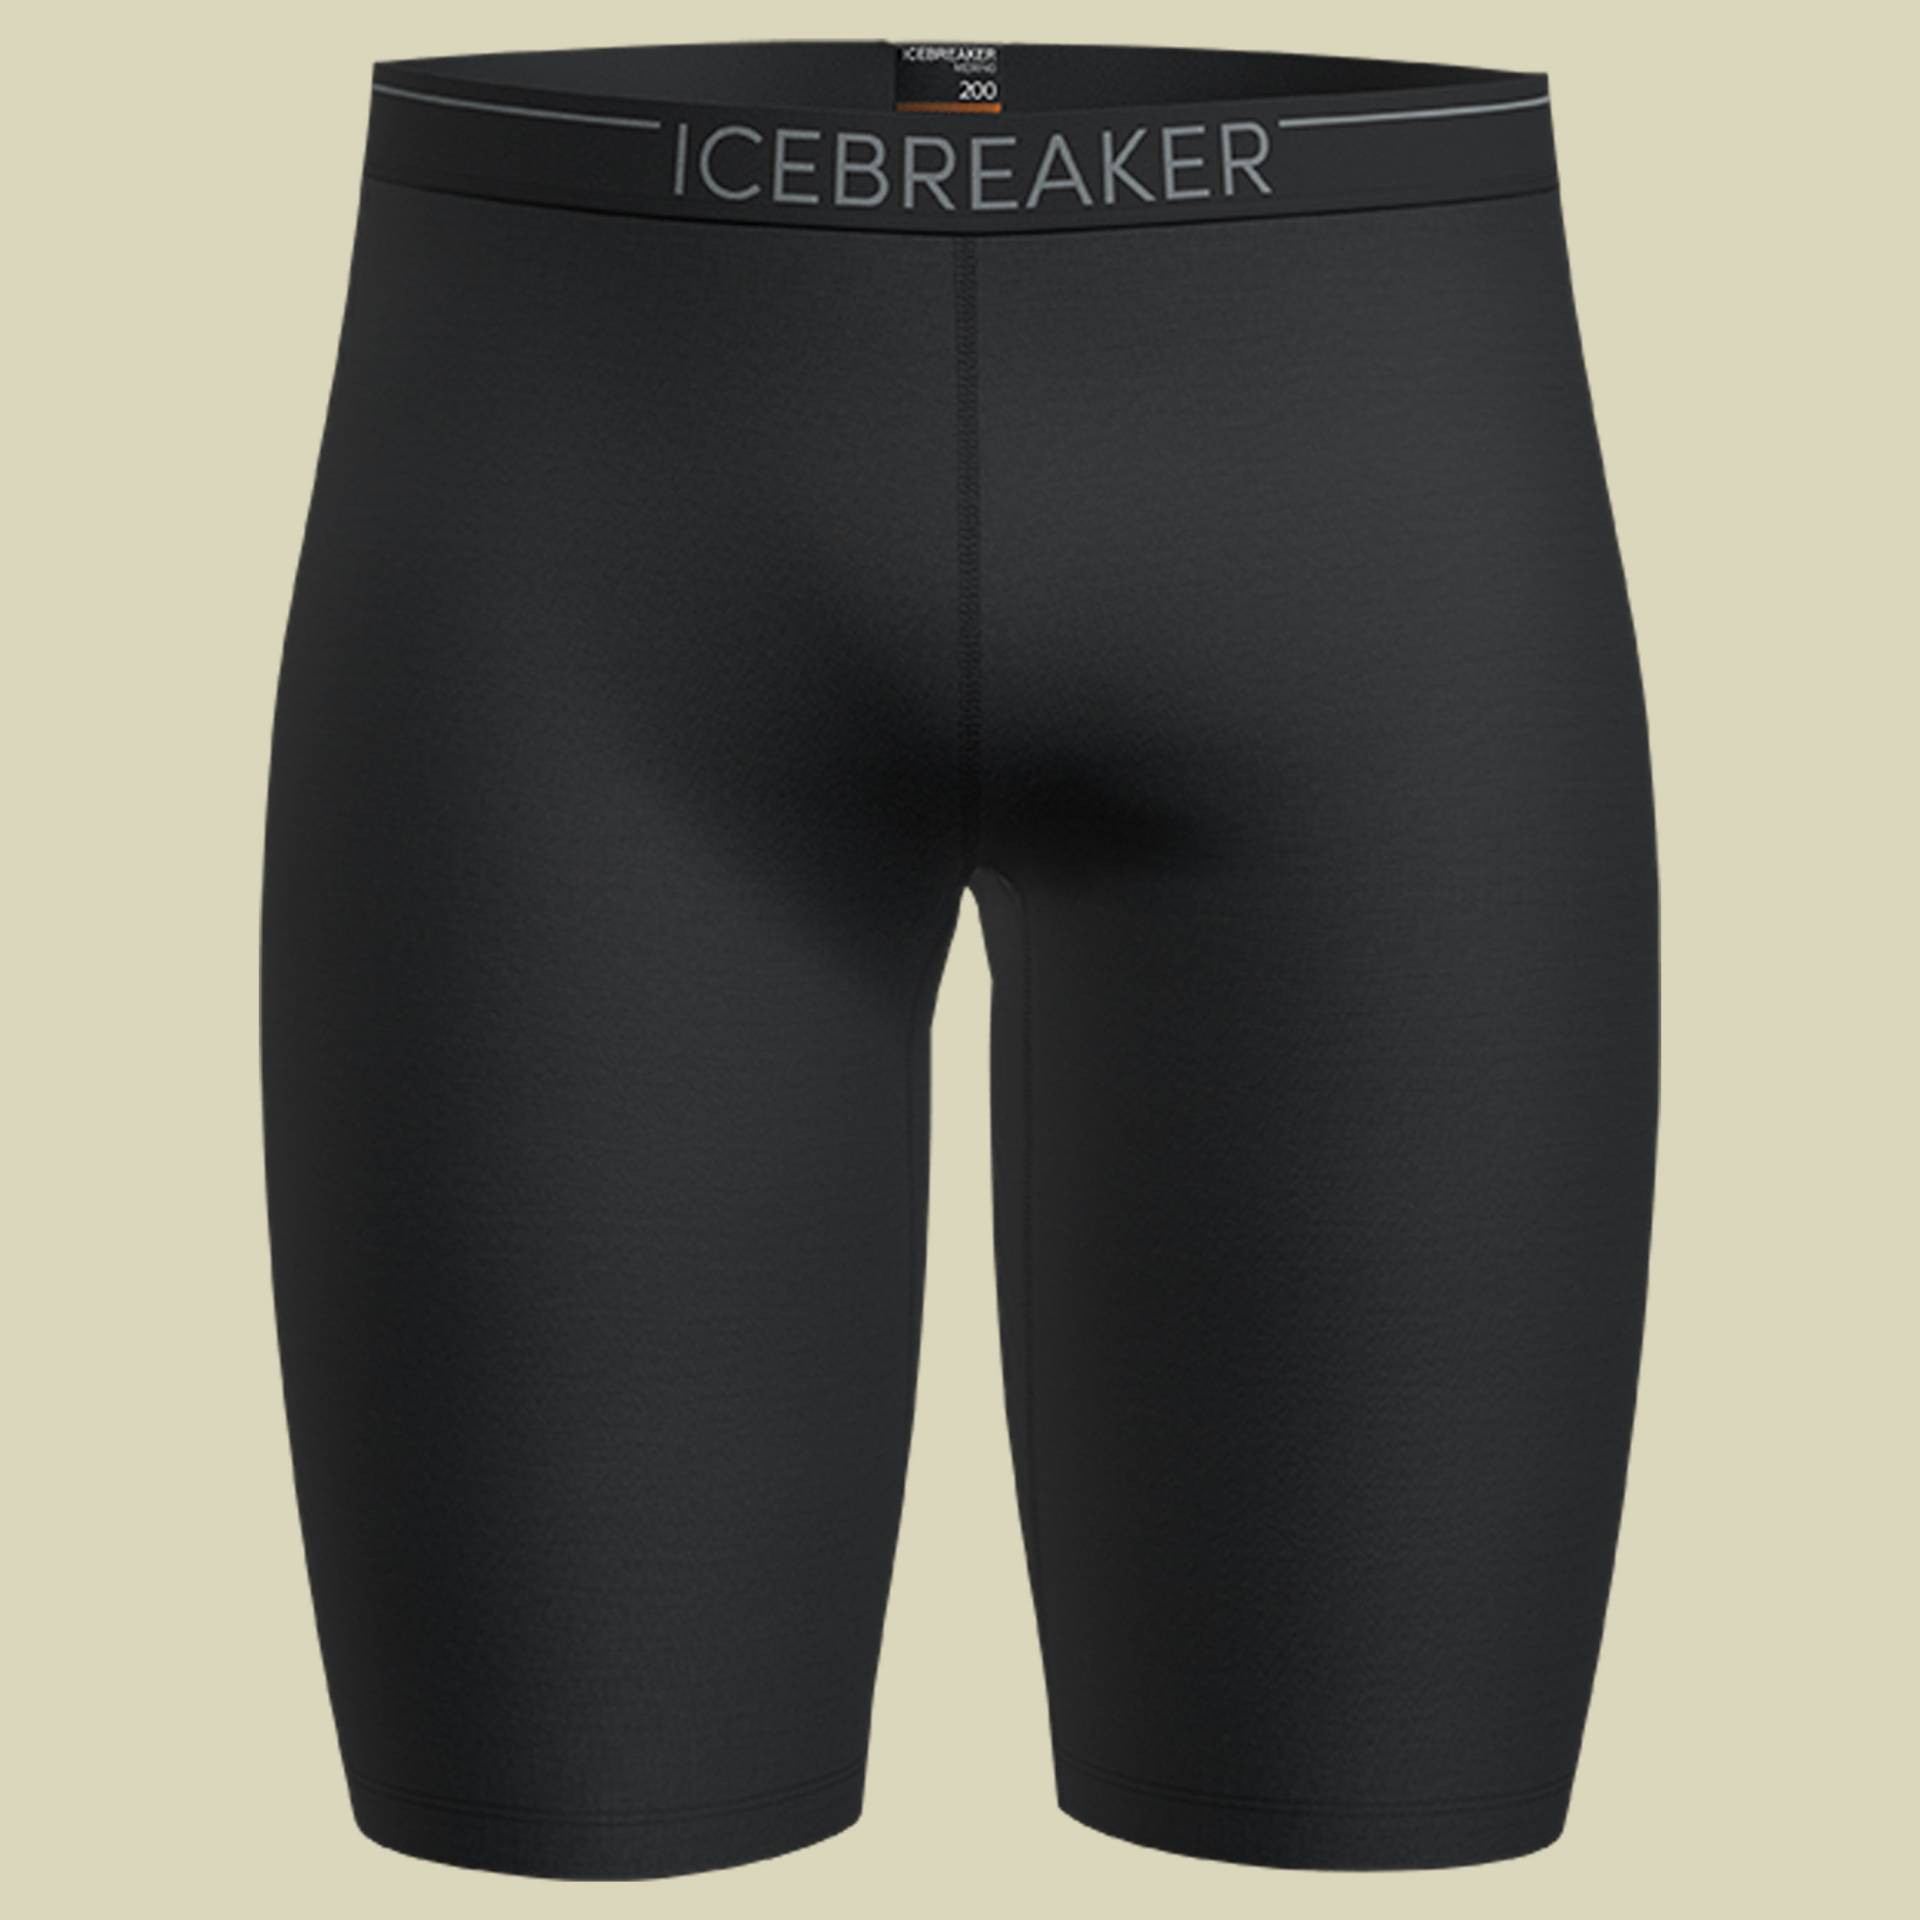 Oasis Shorts Men 200 Größe S Farbe black von Icebreaker